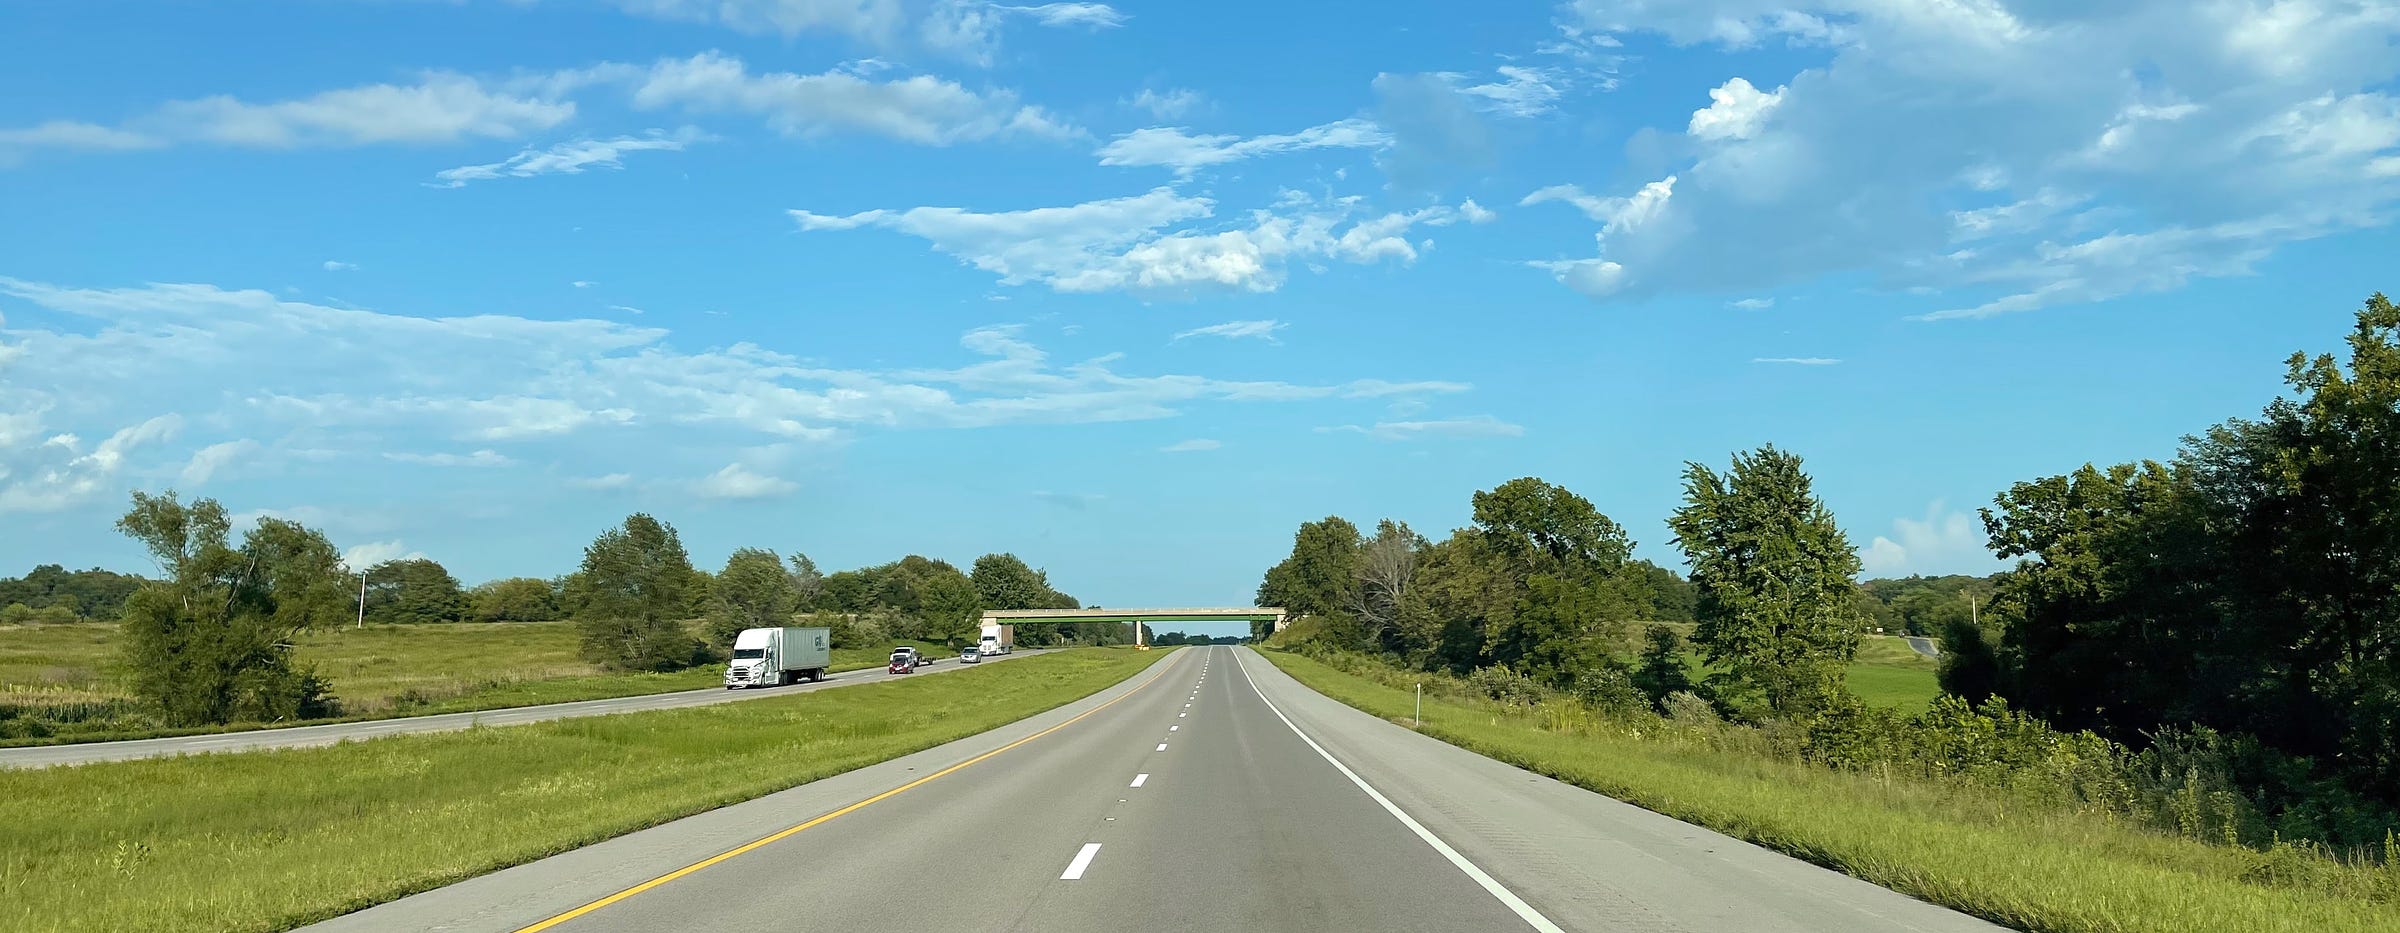 Midwestern American highway